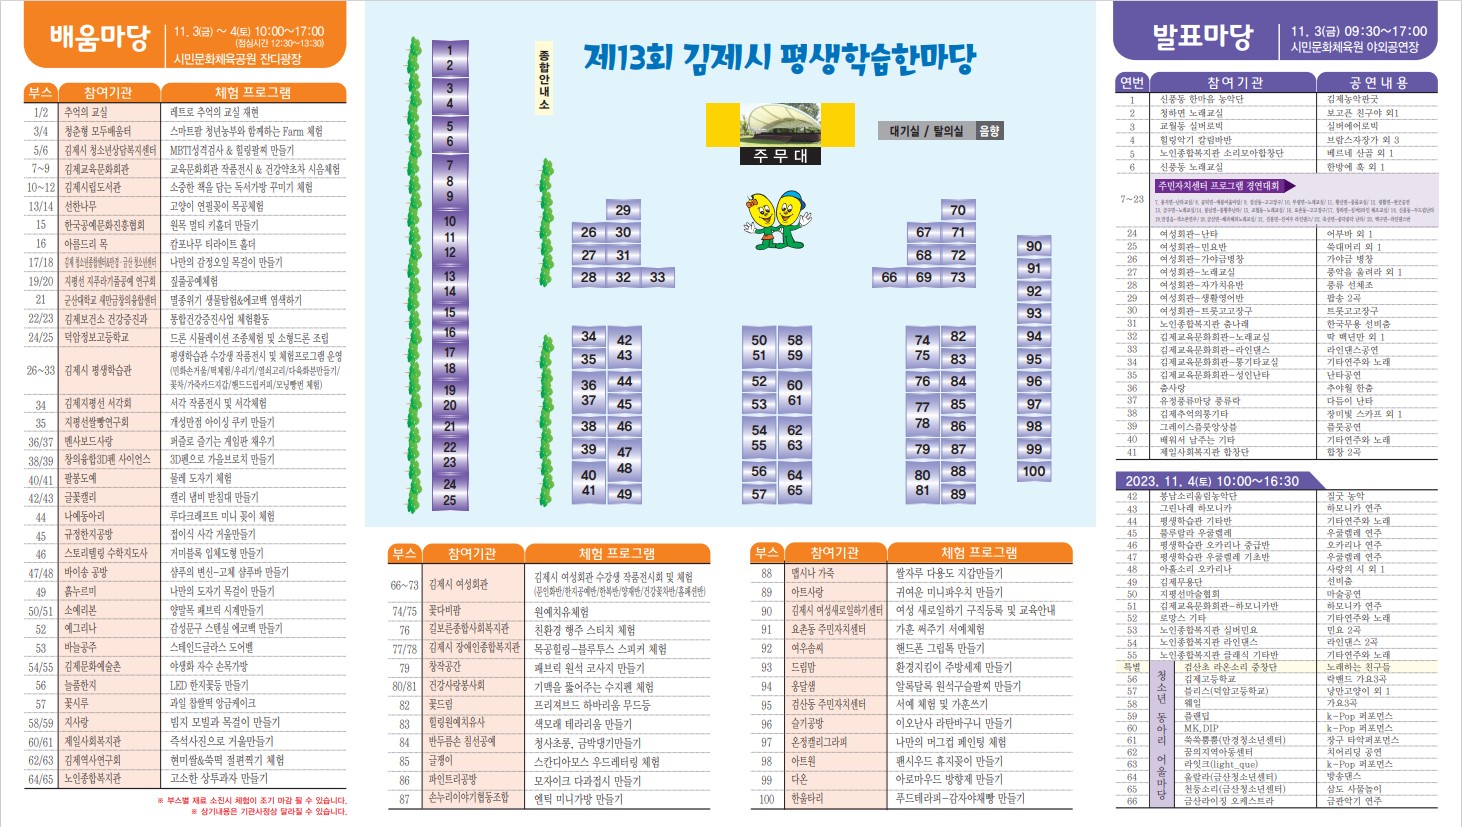 제13회 김제시 평생학습한마당 홍보리플릿-2(축소)